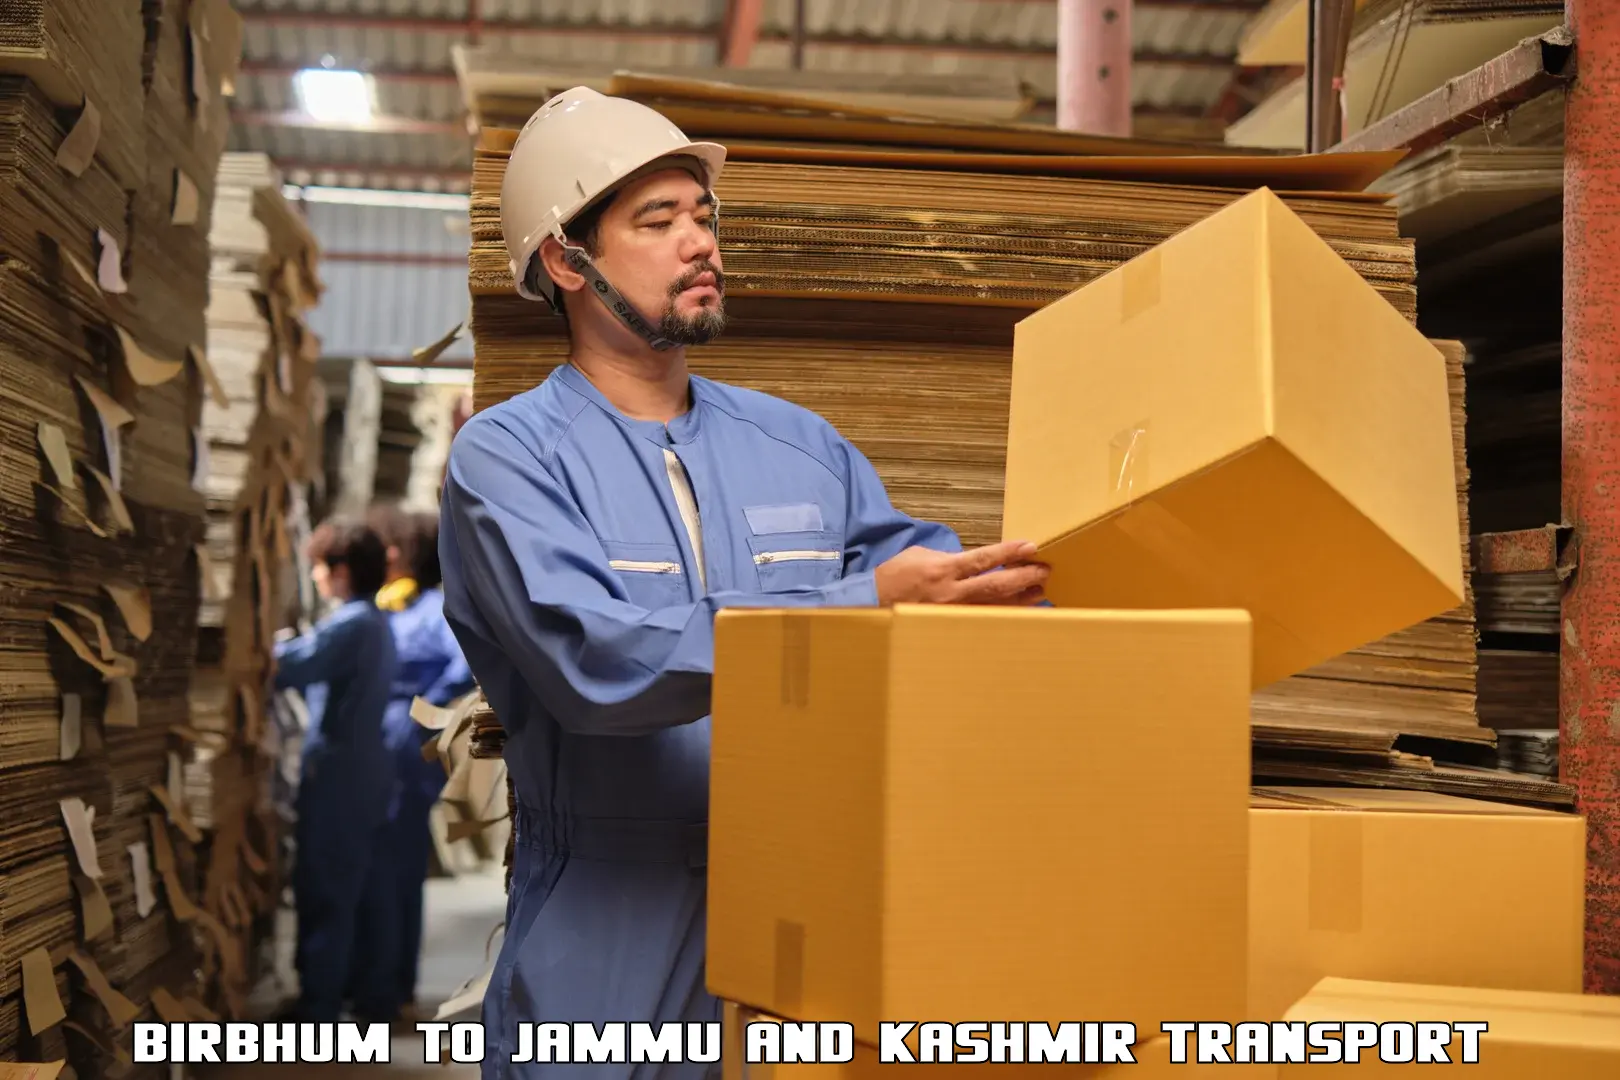 Bike shipping service Birbhum to Jammu and Kashmir